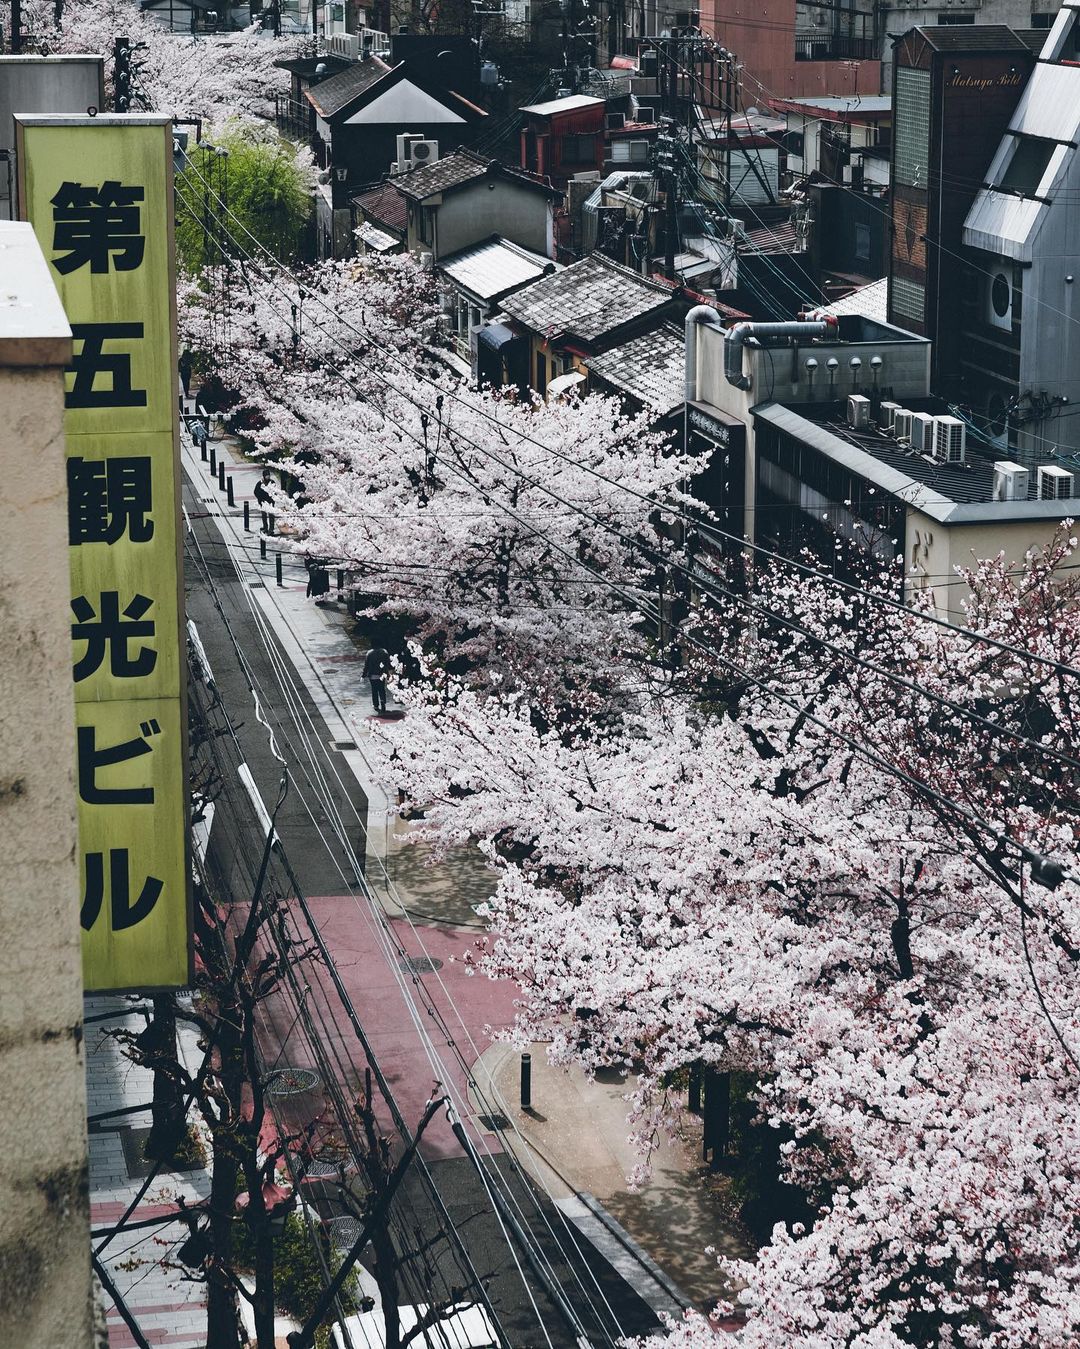 Города и природа Японии на снимках Юмы Ямашиты городской, Ямашита, Японии, Читать, подписчиков, более, в Instagram, делится, фотограф, работами, Своими, сцены, городские, волшебные, запечатлеть, чтобы, исследует, улицы, Yamashita, фотографии